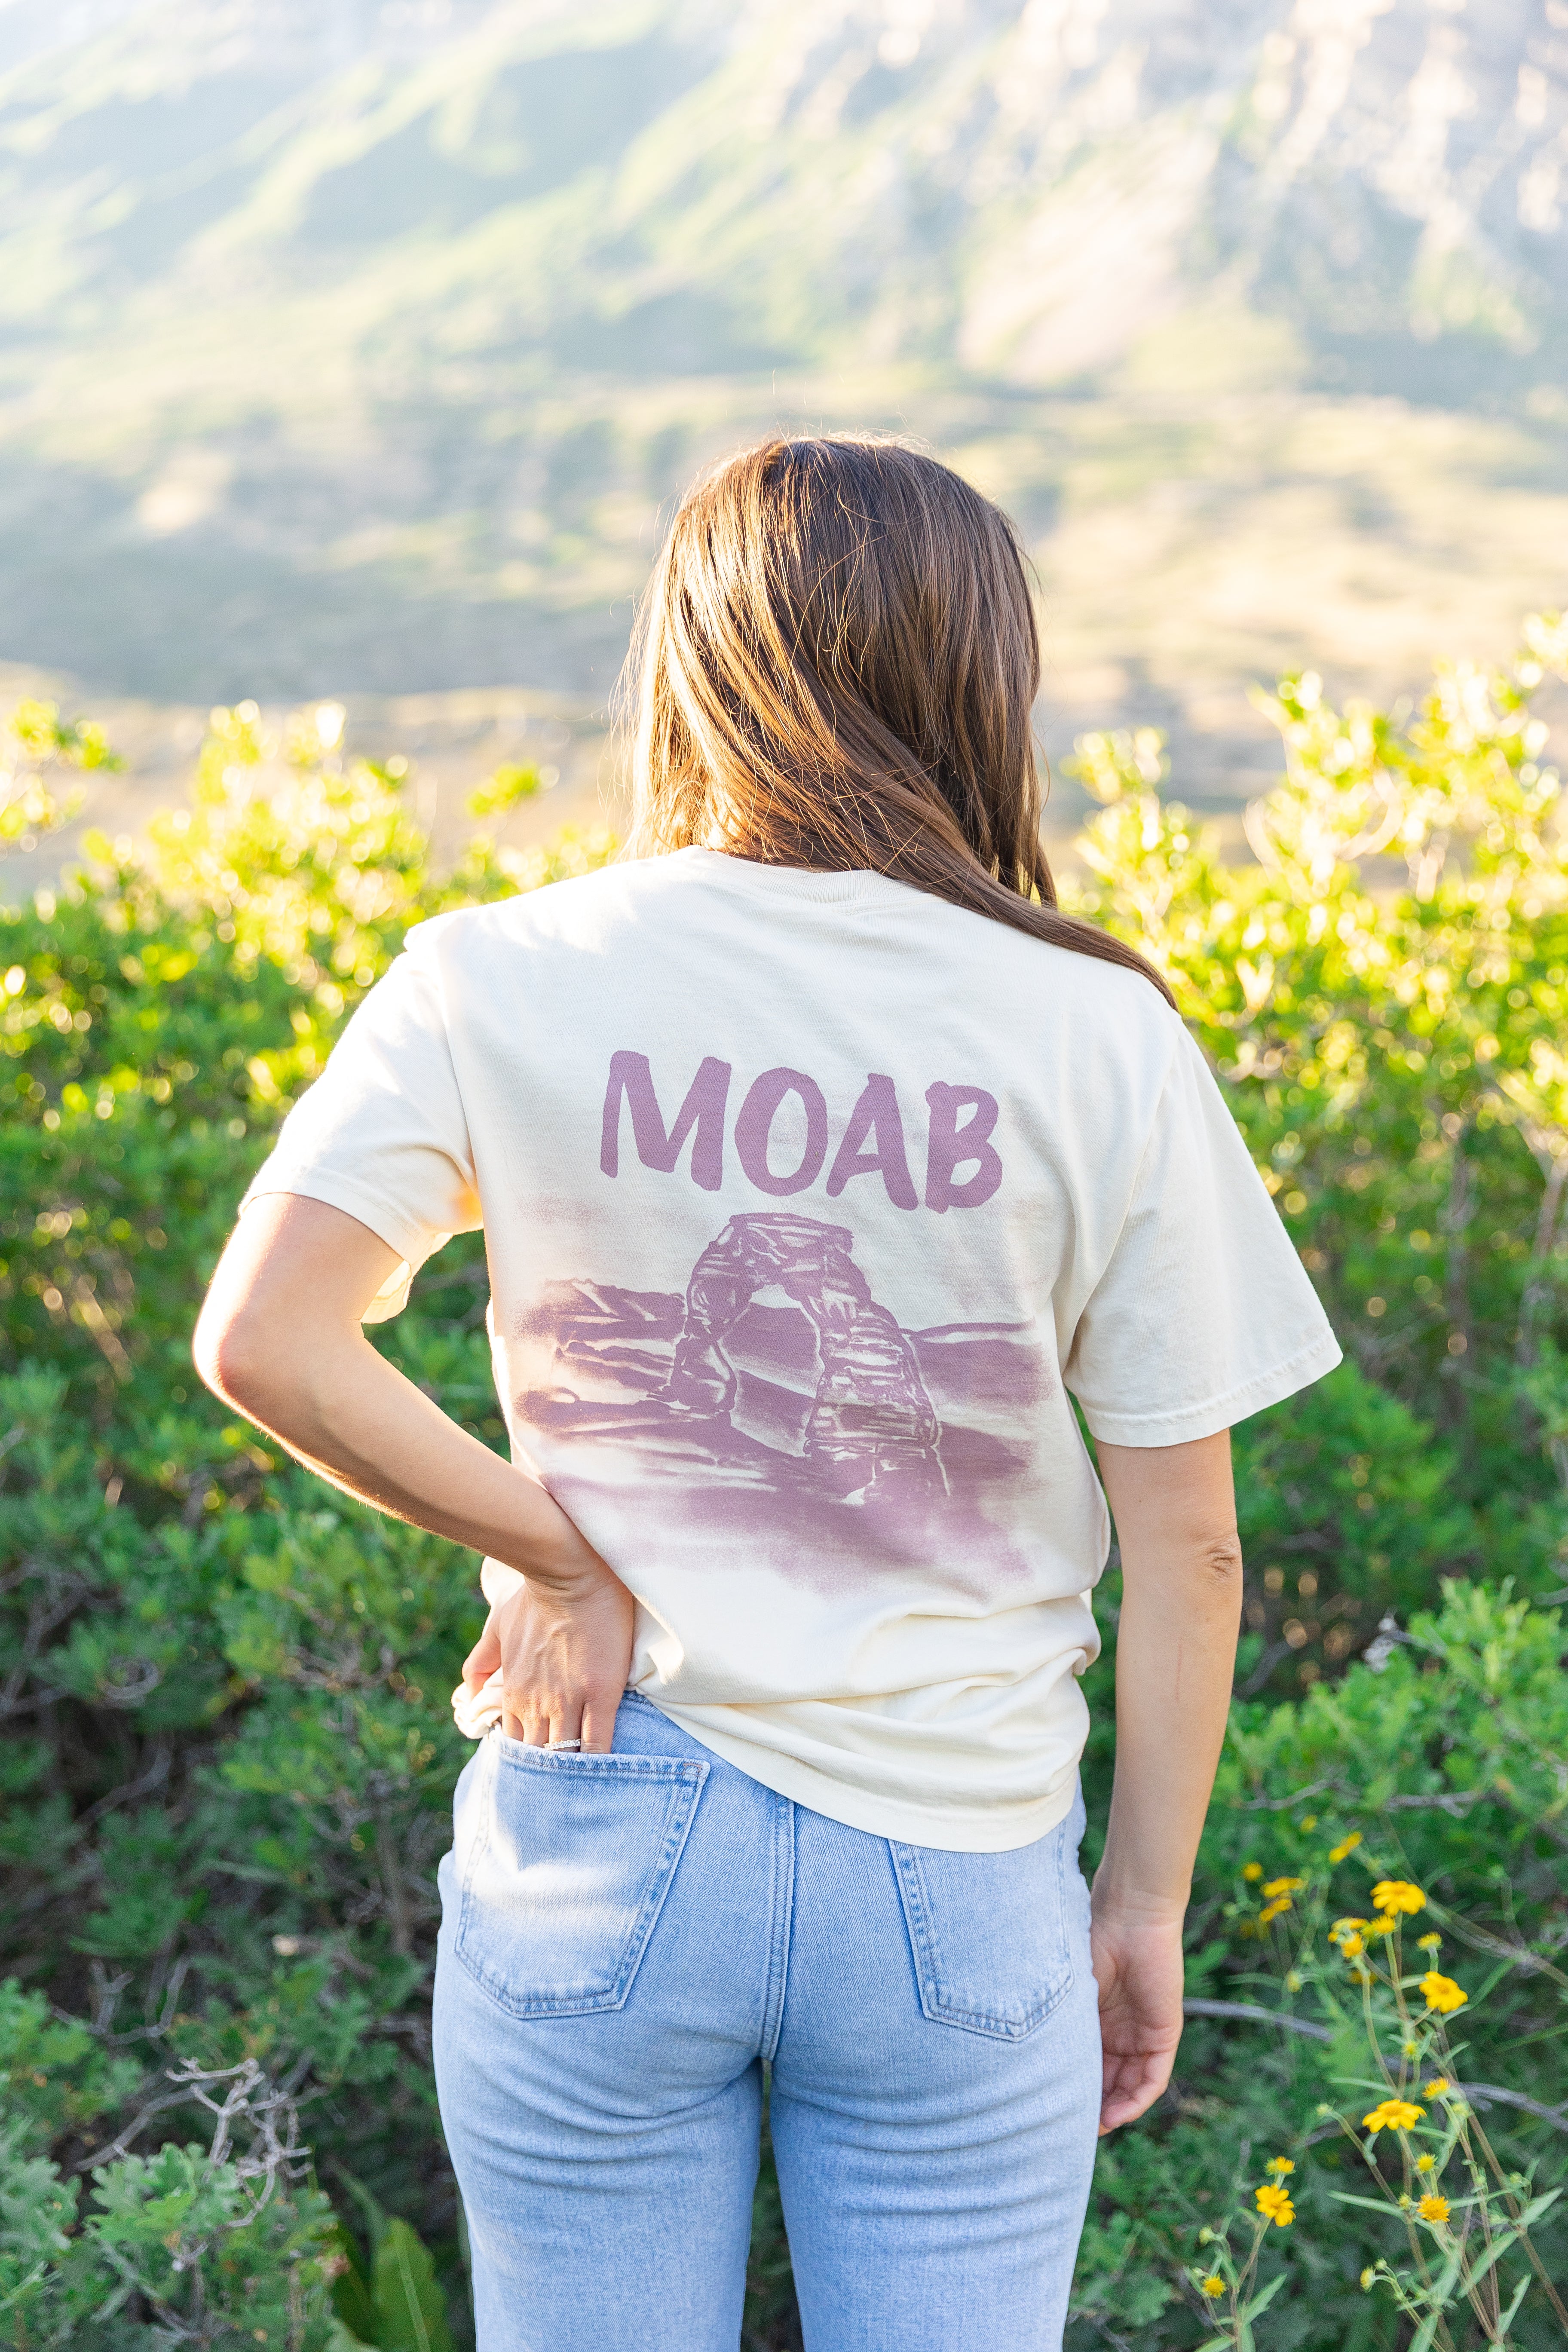 Moab Vintage Tee - Shop Back Home